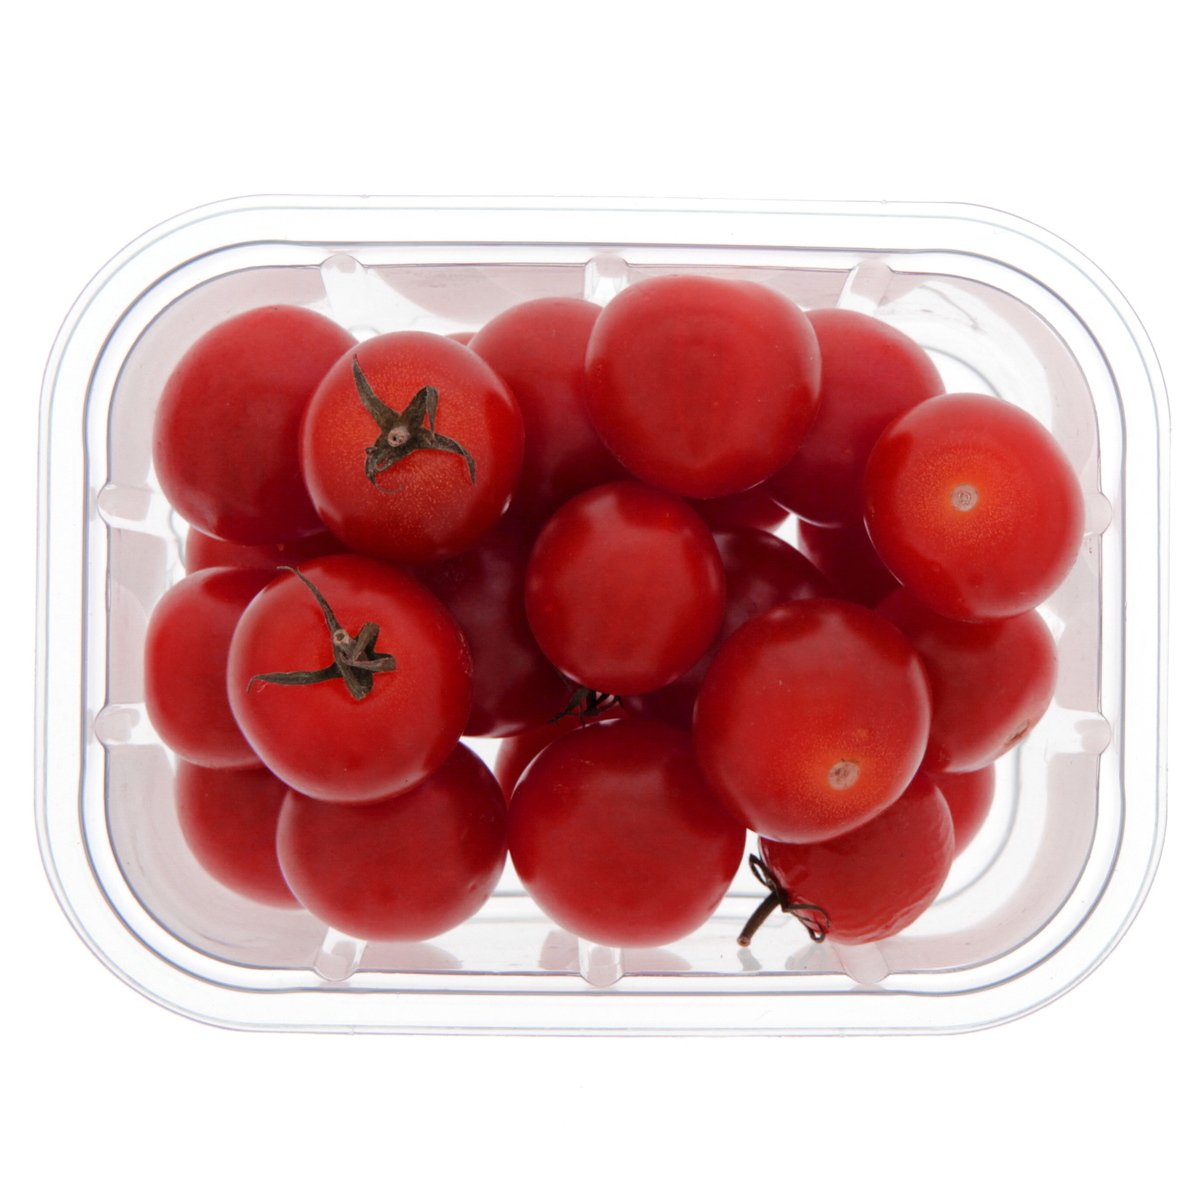 اشتري قم بشراء عبوة طماطم كرزية حمراء إماراتية Online at Best Price من الموقع - من لولو هايبر ماركت Tomatoes في الامارات